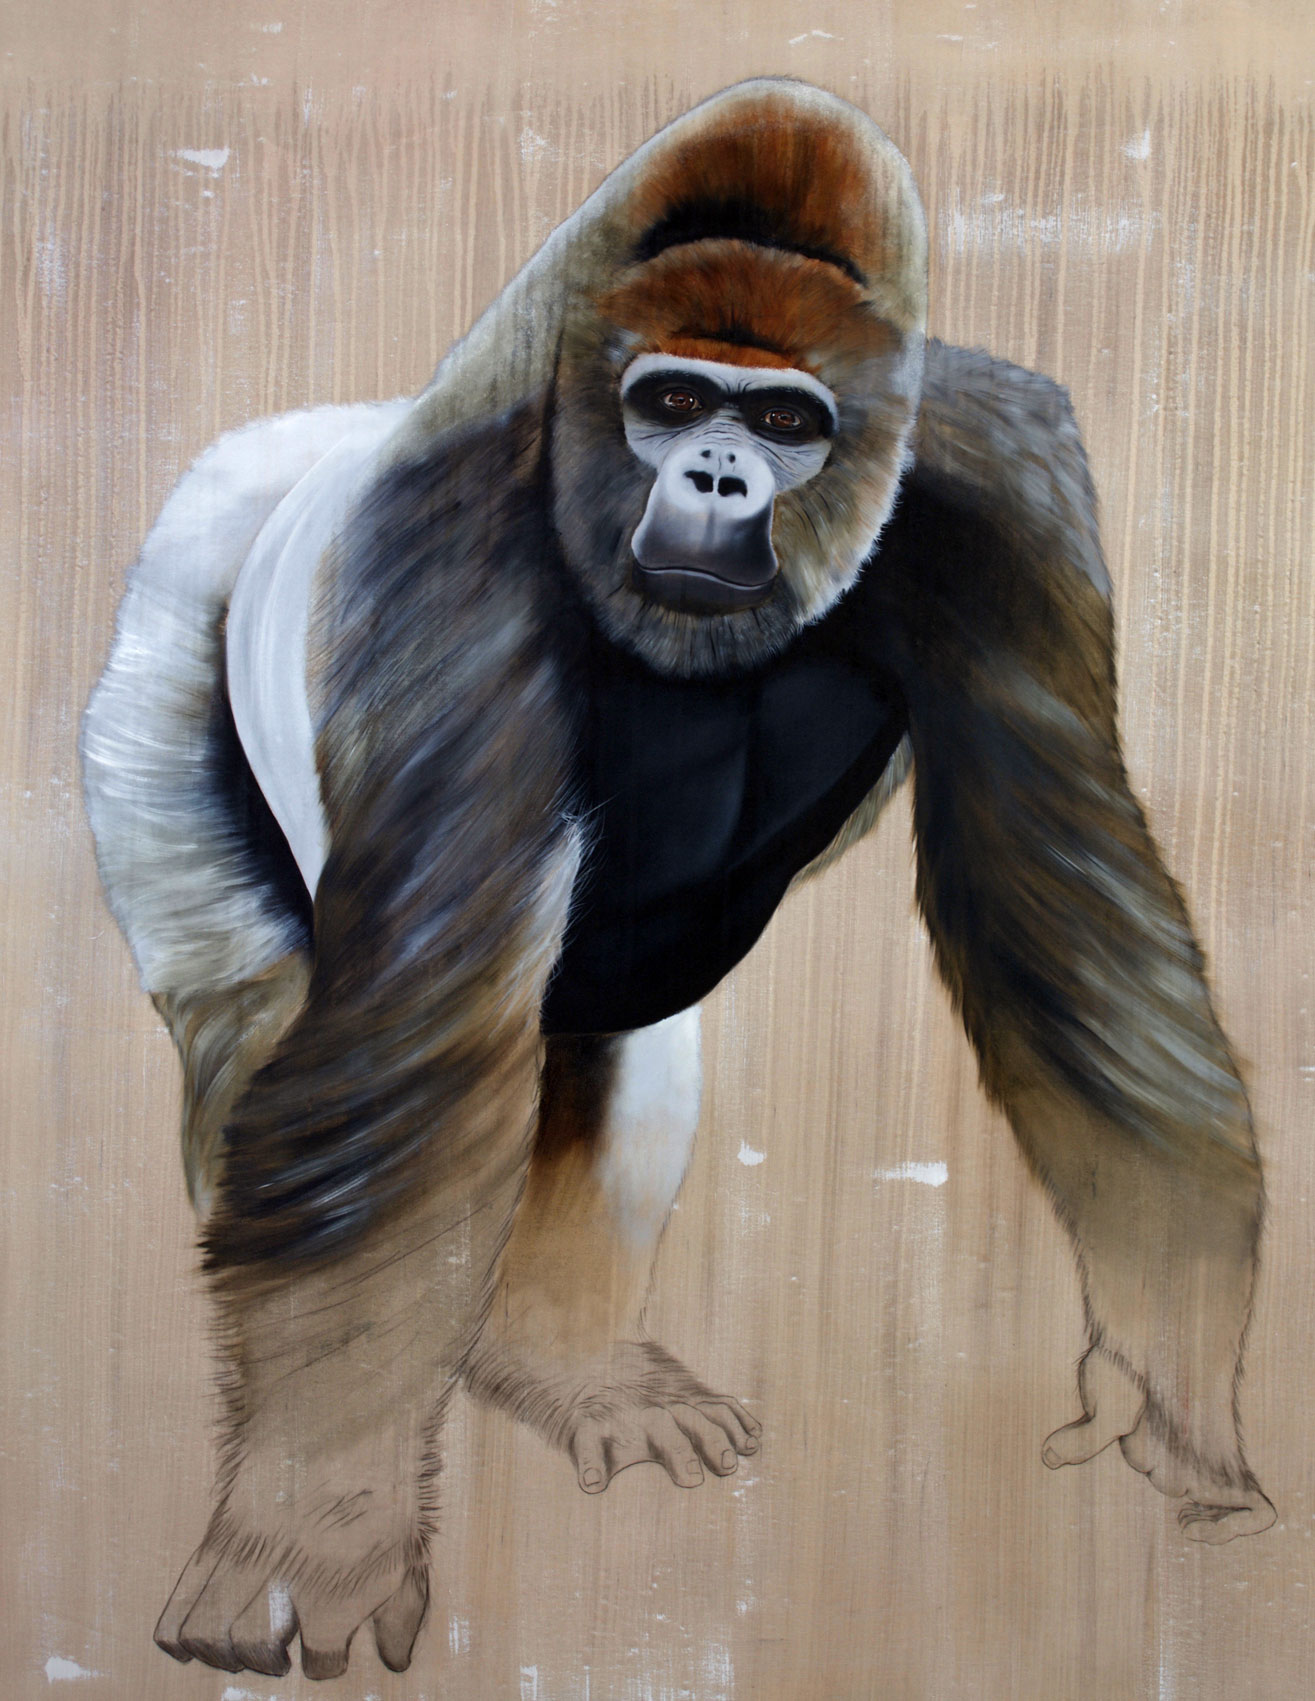 Gorilla gorilla  gorilla-ape-silverback-threatened-endangered-extinction Thierry Bisch Contemporary painter animals painting art  nature biodiversity conservation 